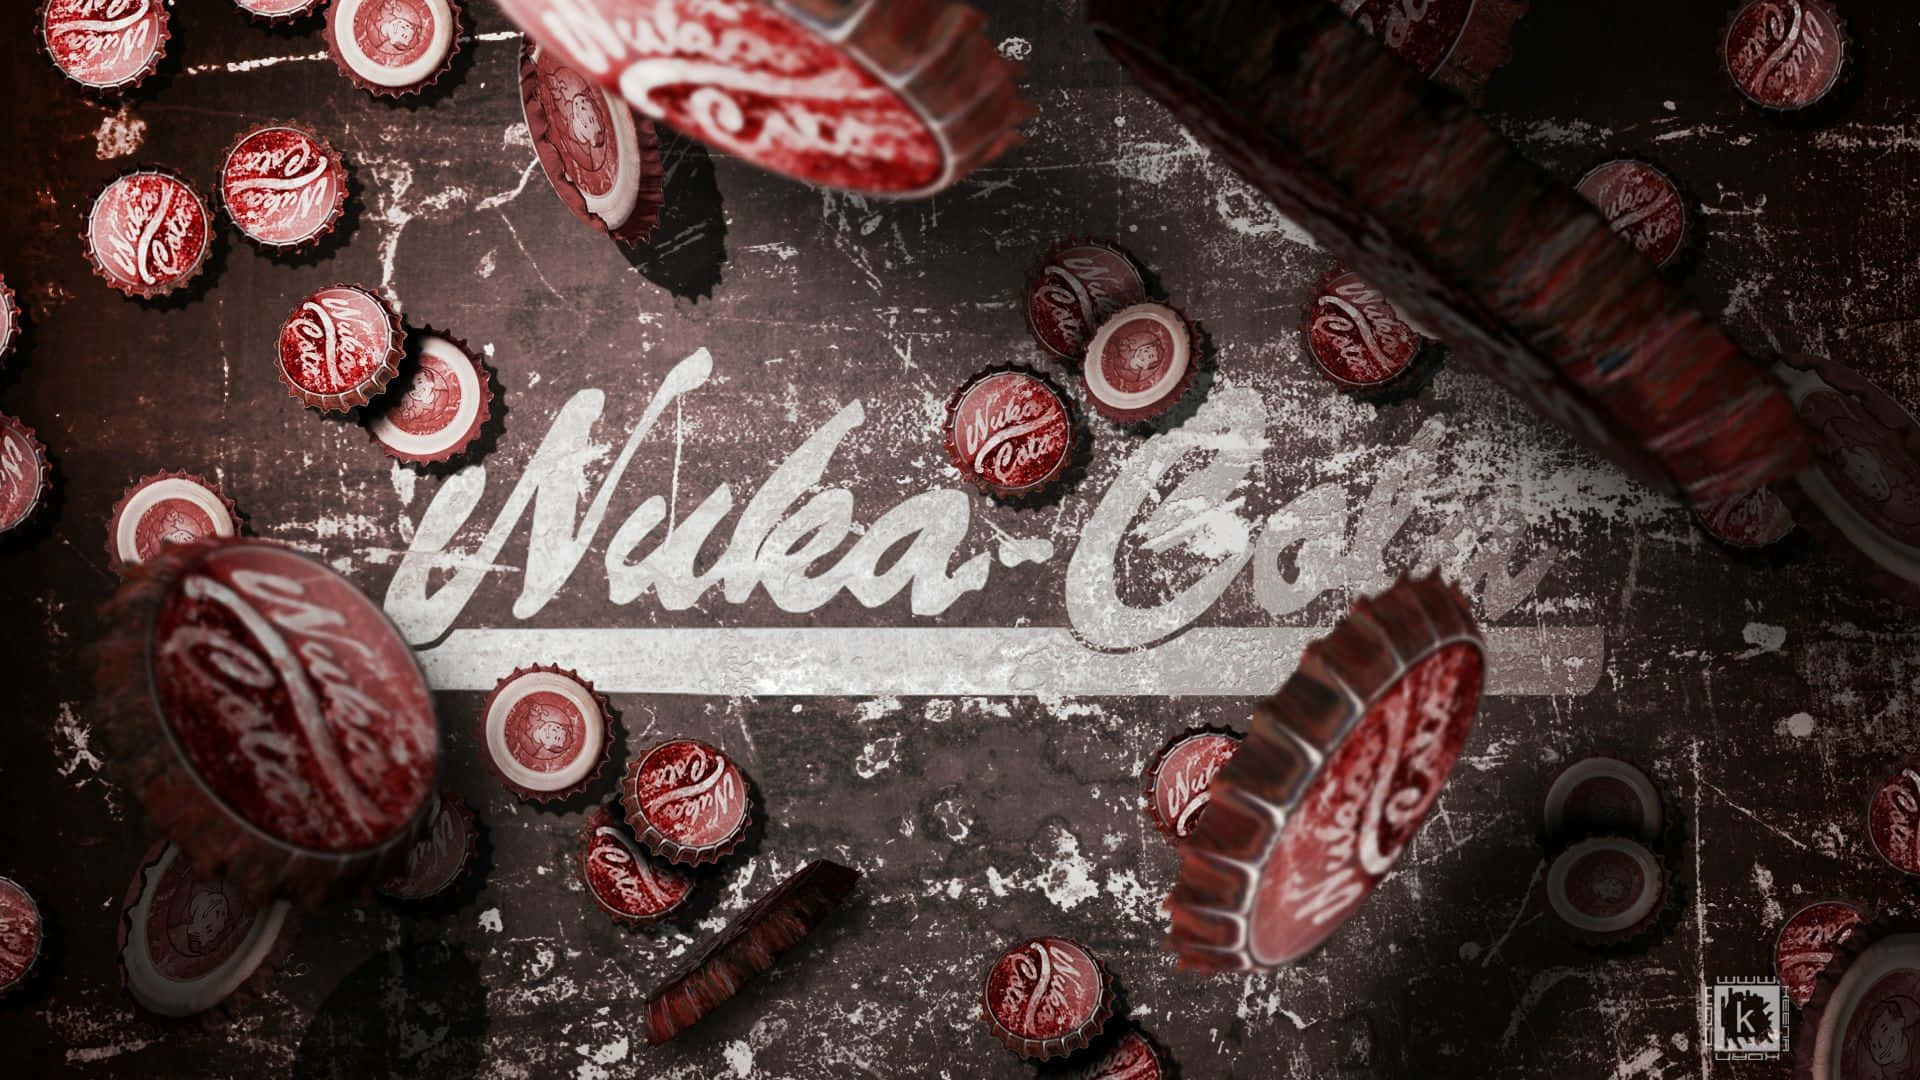 Nuka Cola 1920 X 1080 Wallpaper